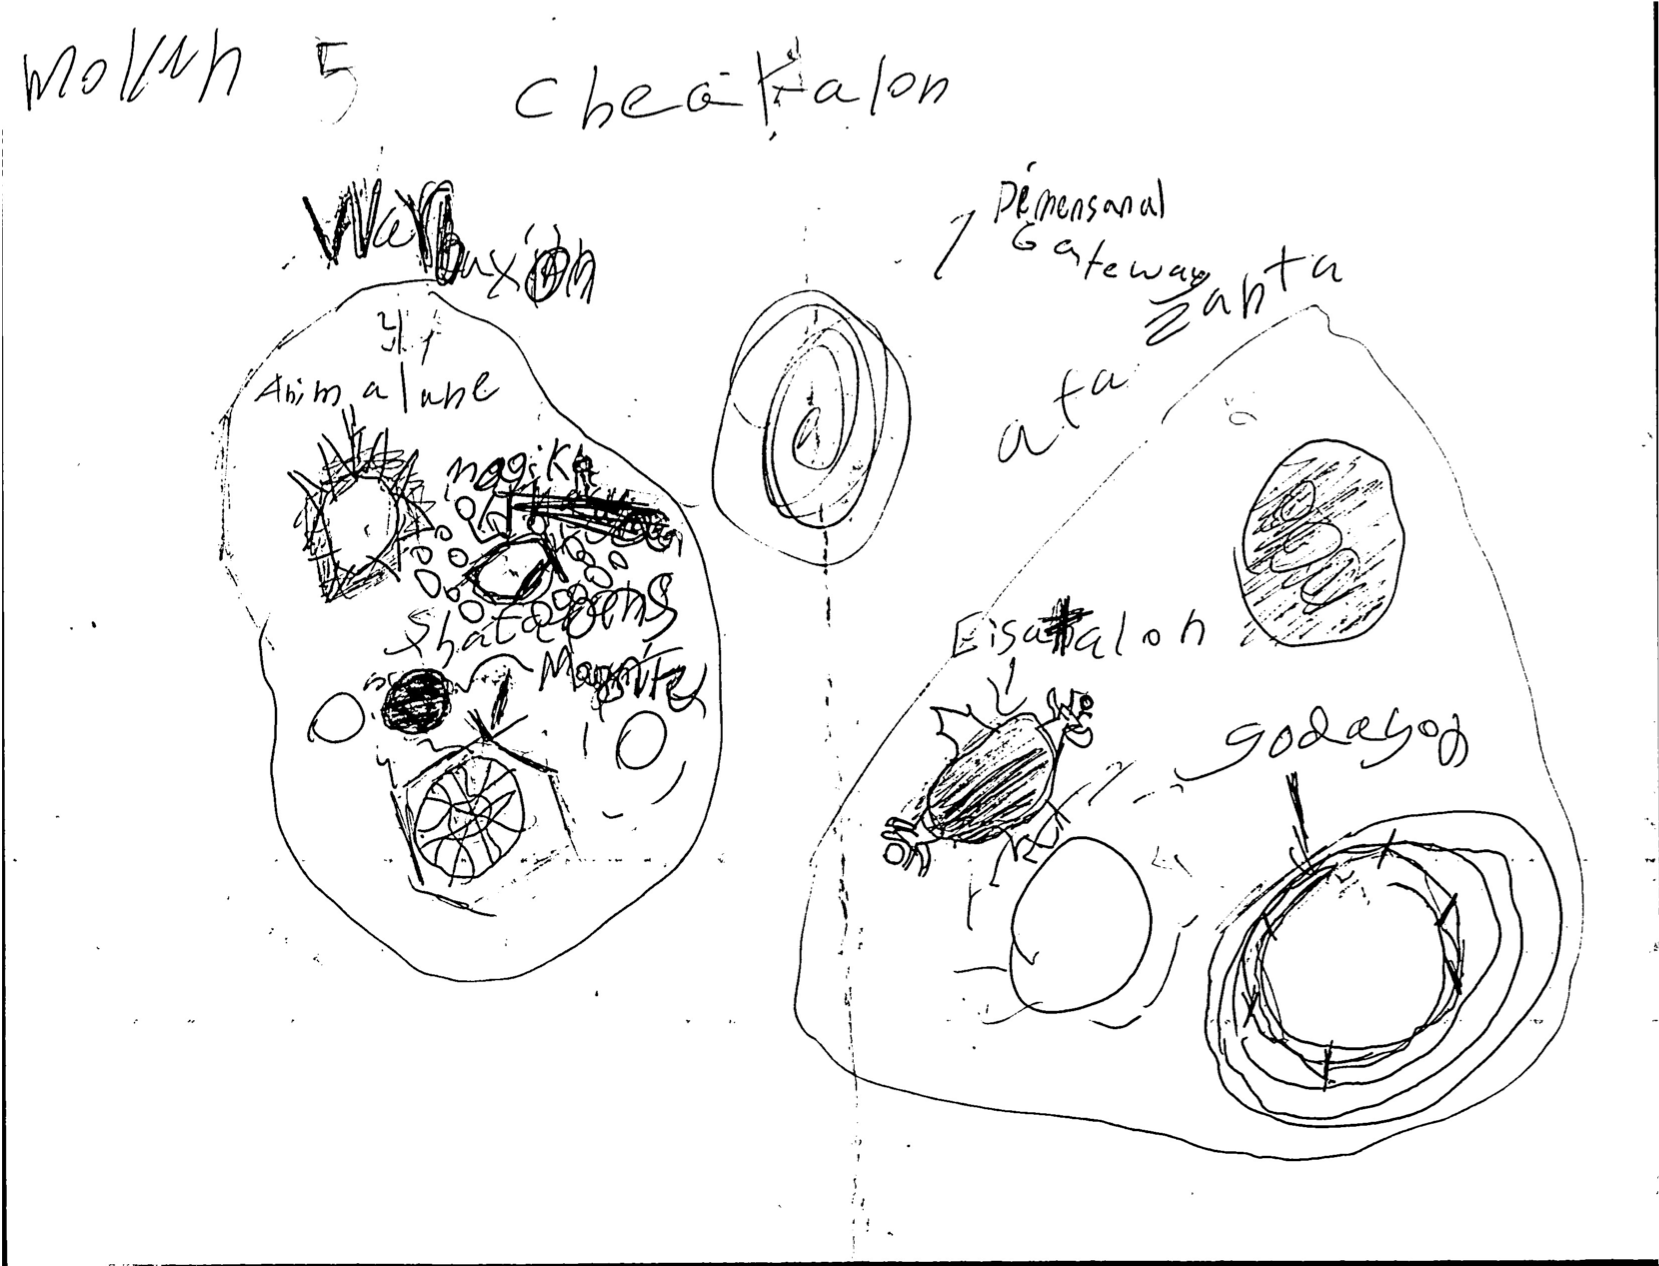 Cheakalon Galaxy Map